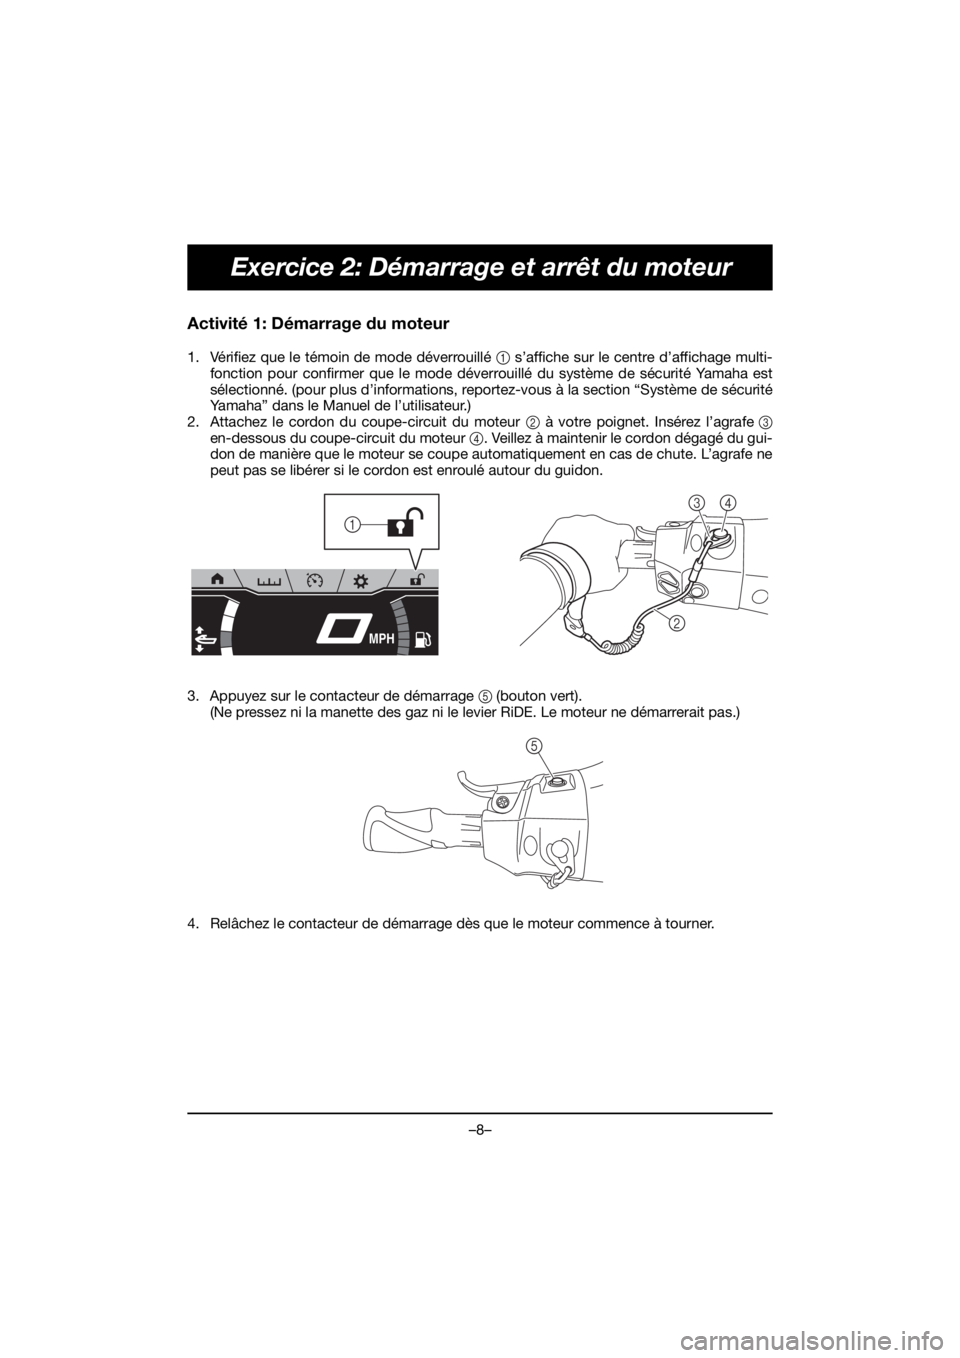 YAMAHA FX HO 2020  Manuale de Empleo (in Spanish) –8–
Exercice 2: Démarrage et arrêt du moteur
Activité 1: Démarrage du moteur
1. Vérifiez que le témoin de mode déverrouillé 1 s’affiche sur le centre d’affichage multi-
fonction pour c